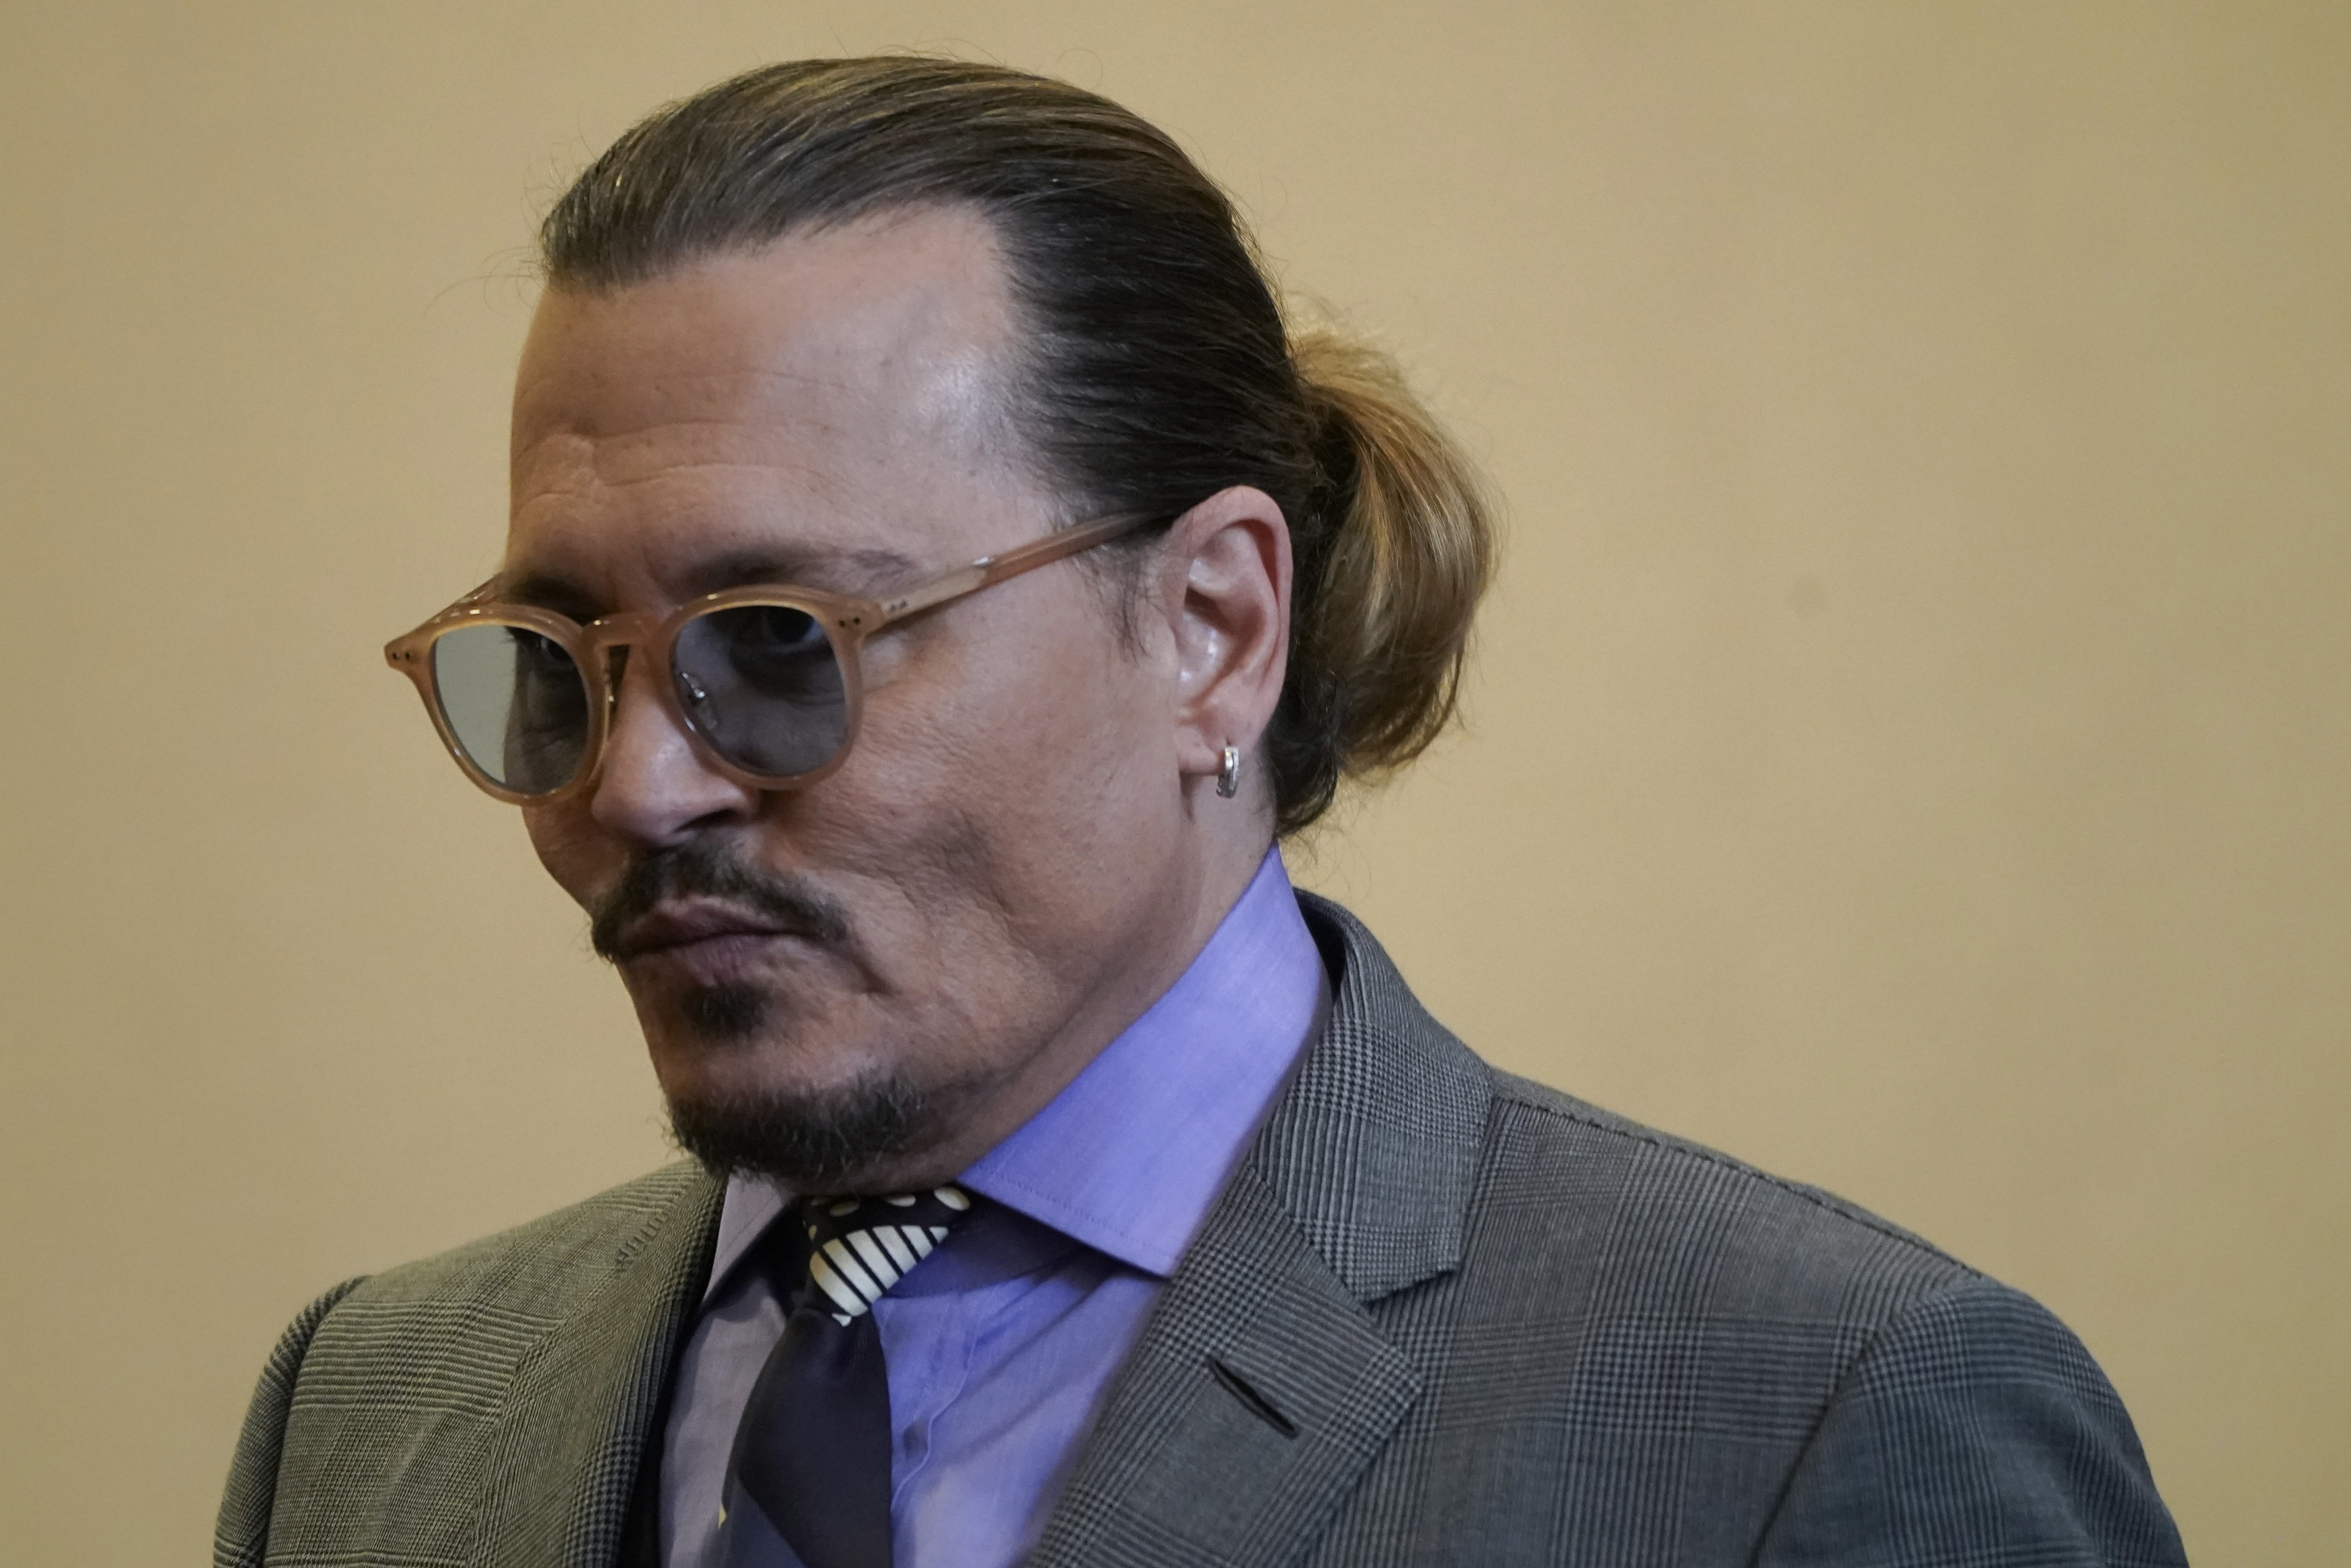 Johnny Depp tem uma nova namorada: sua advogada Joelle Rich